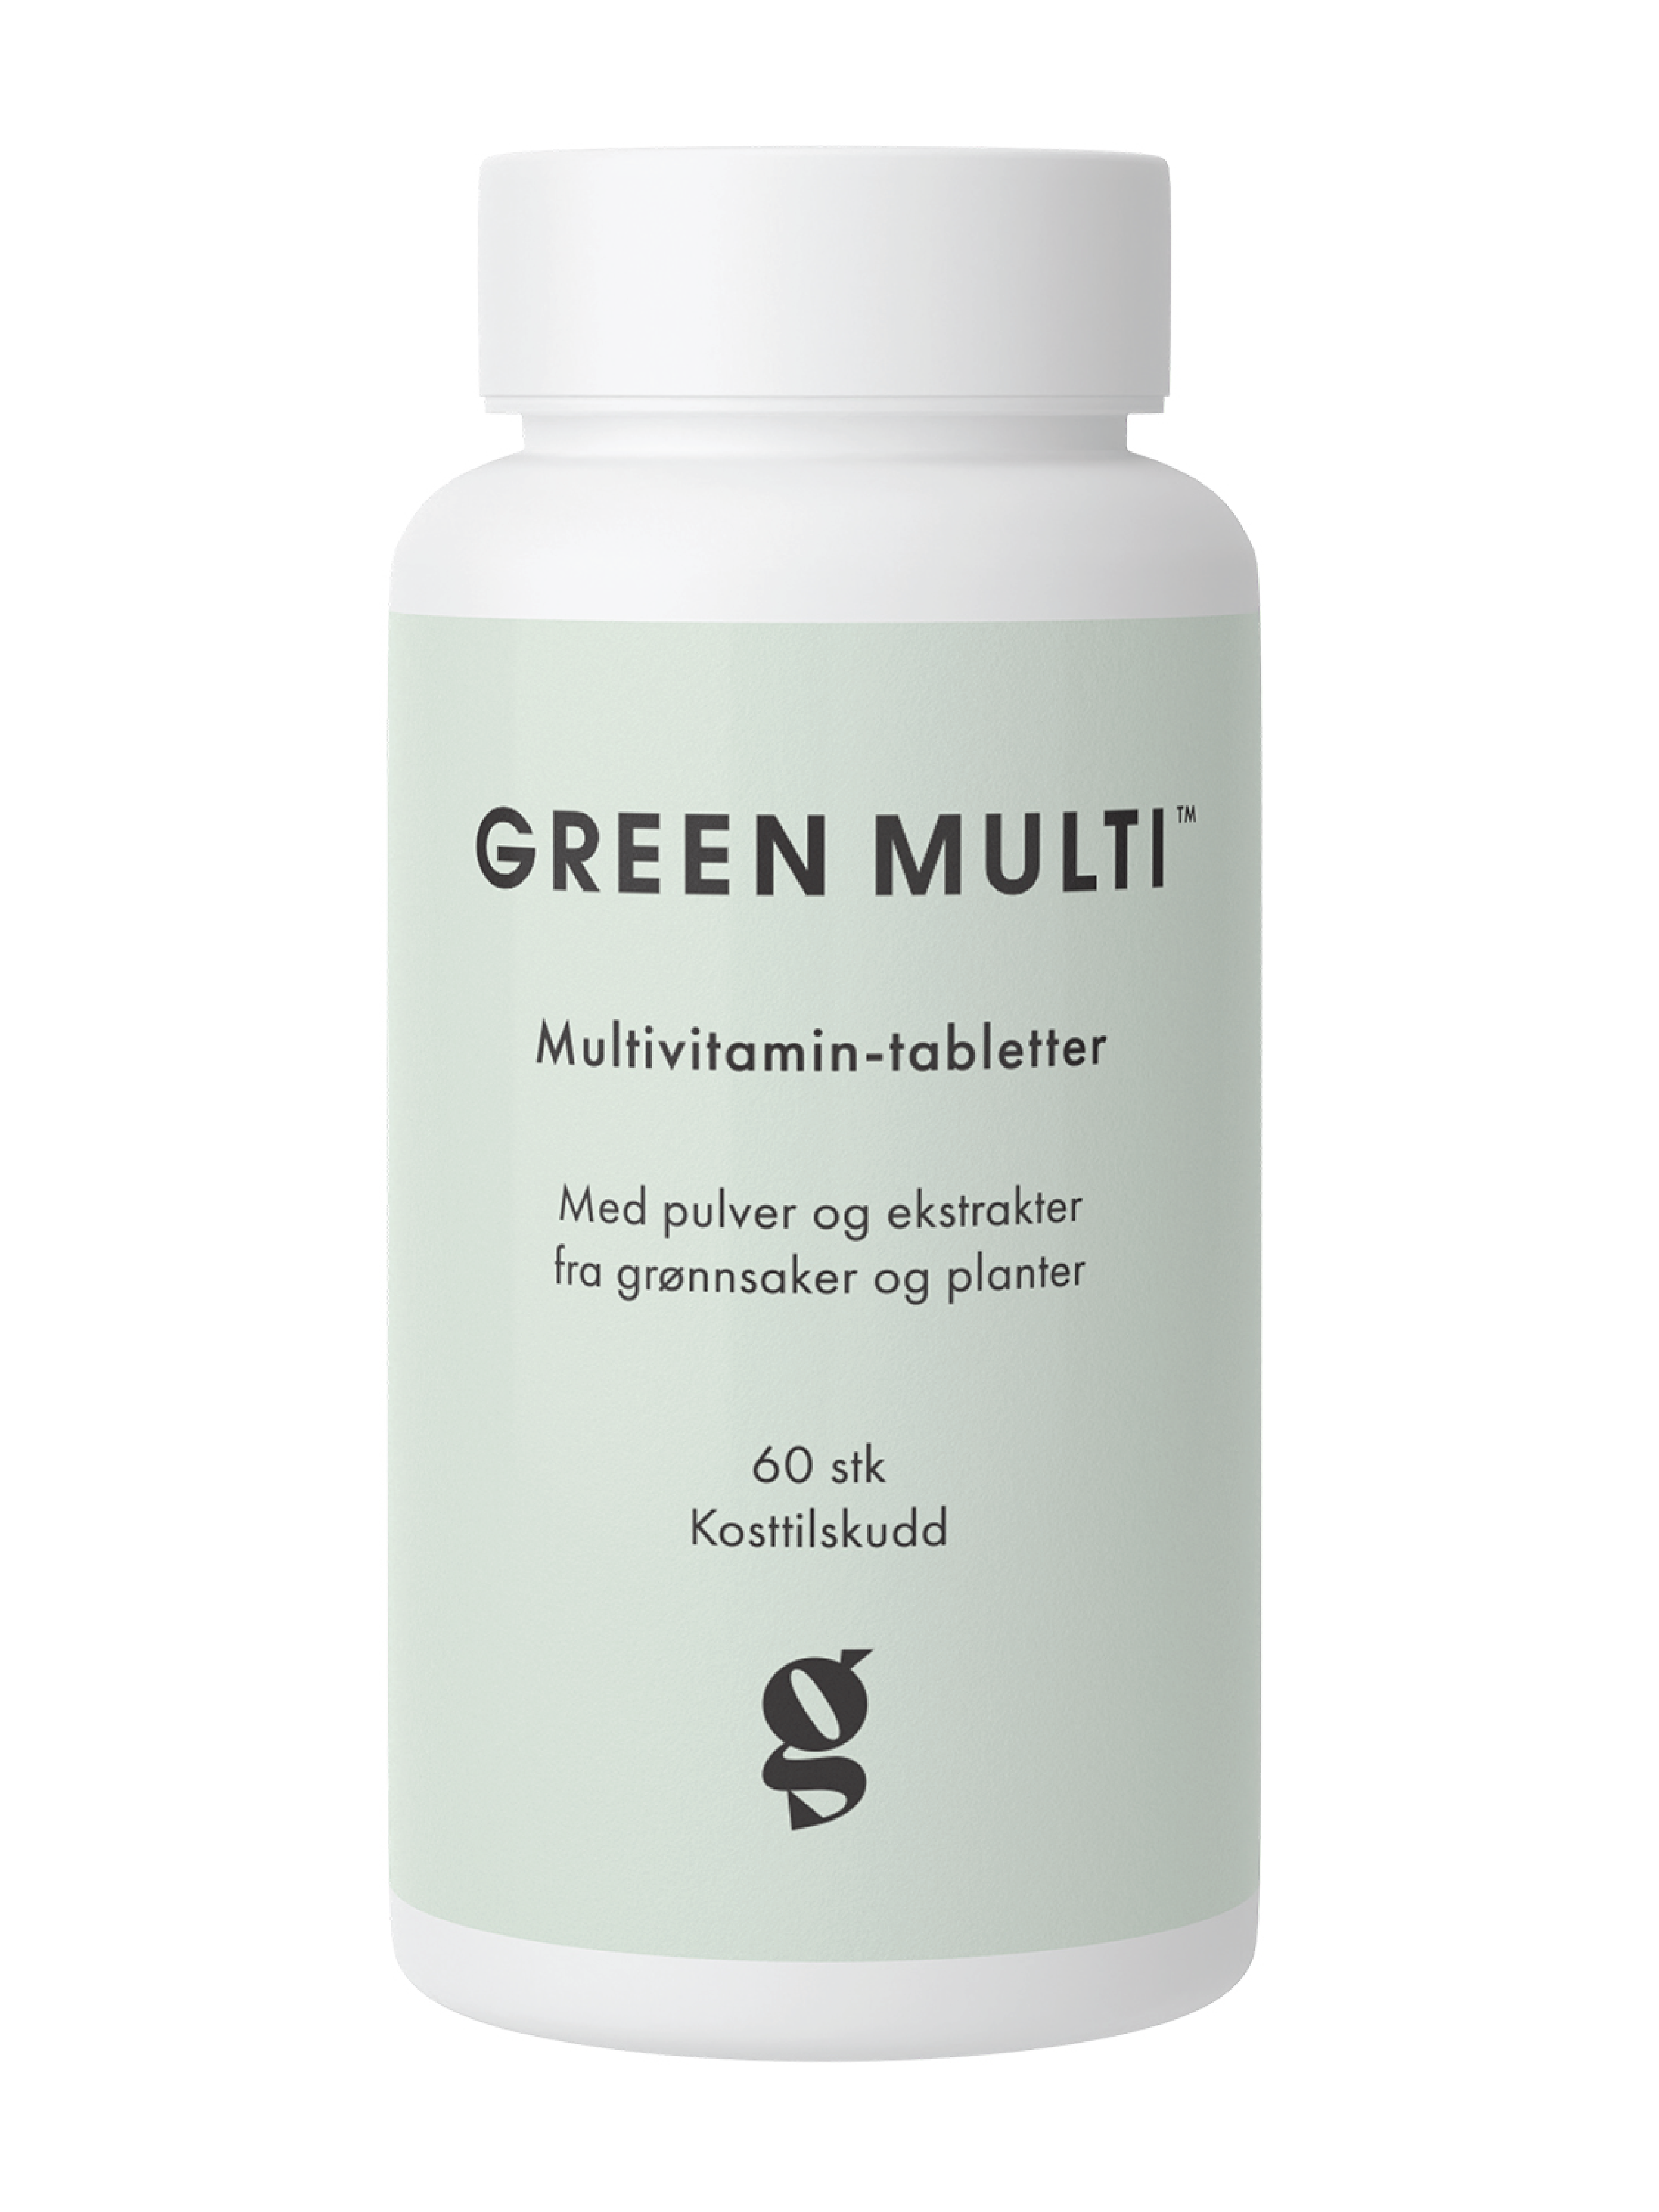 Good For Me Green Multi Multivitamin-tabletter, 60 stk.